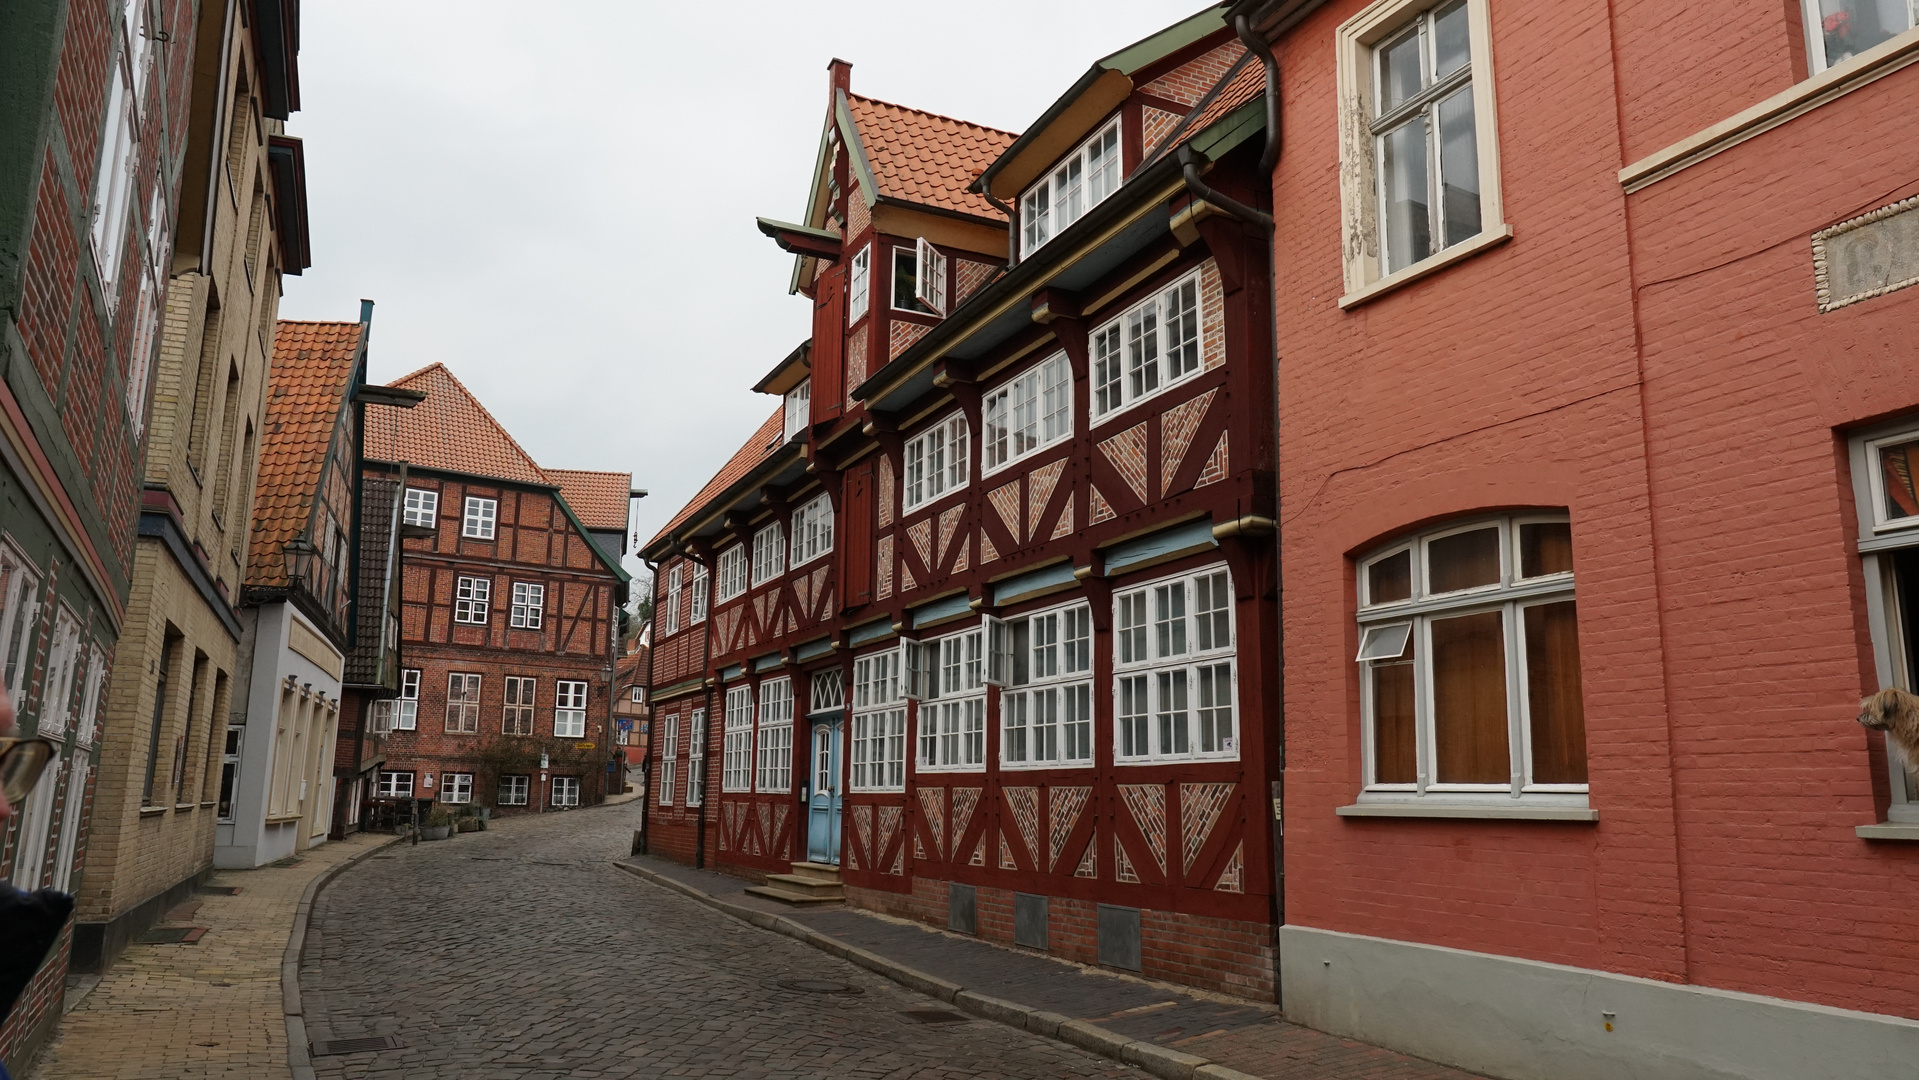  Lauenburg Altstadt im Winterschlaf